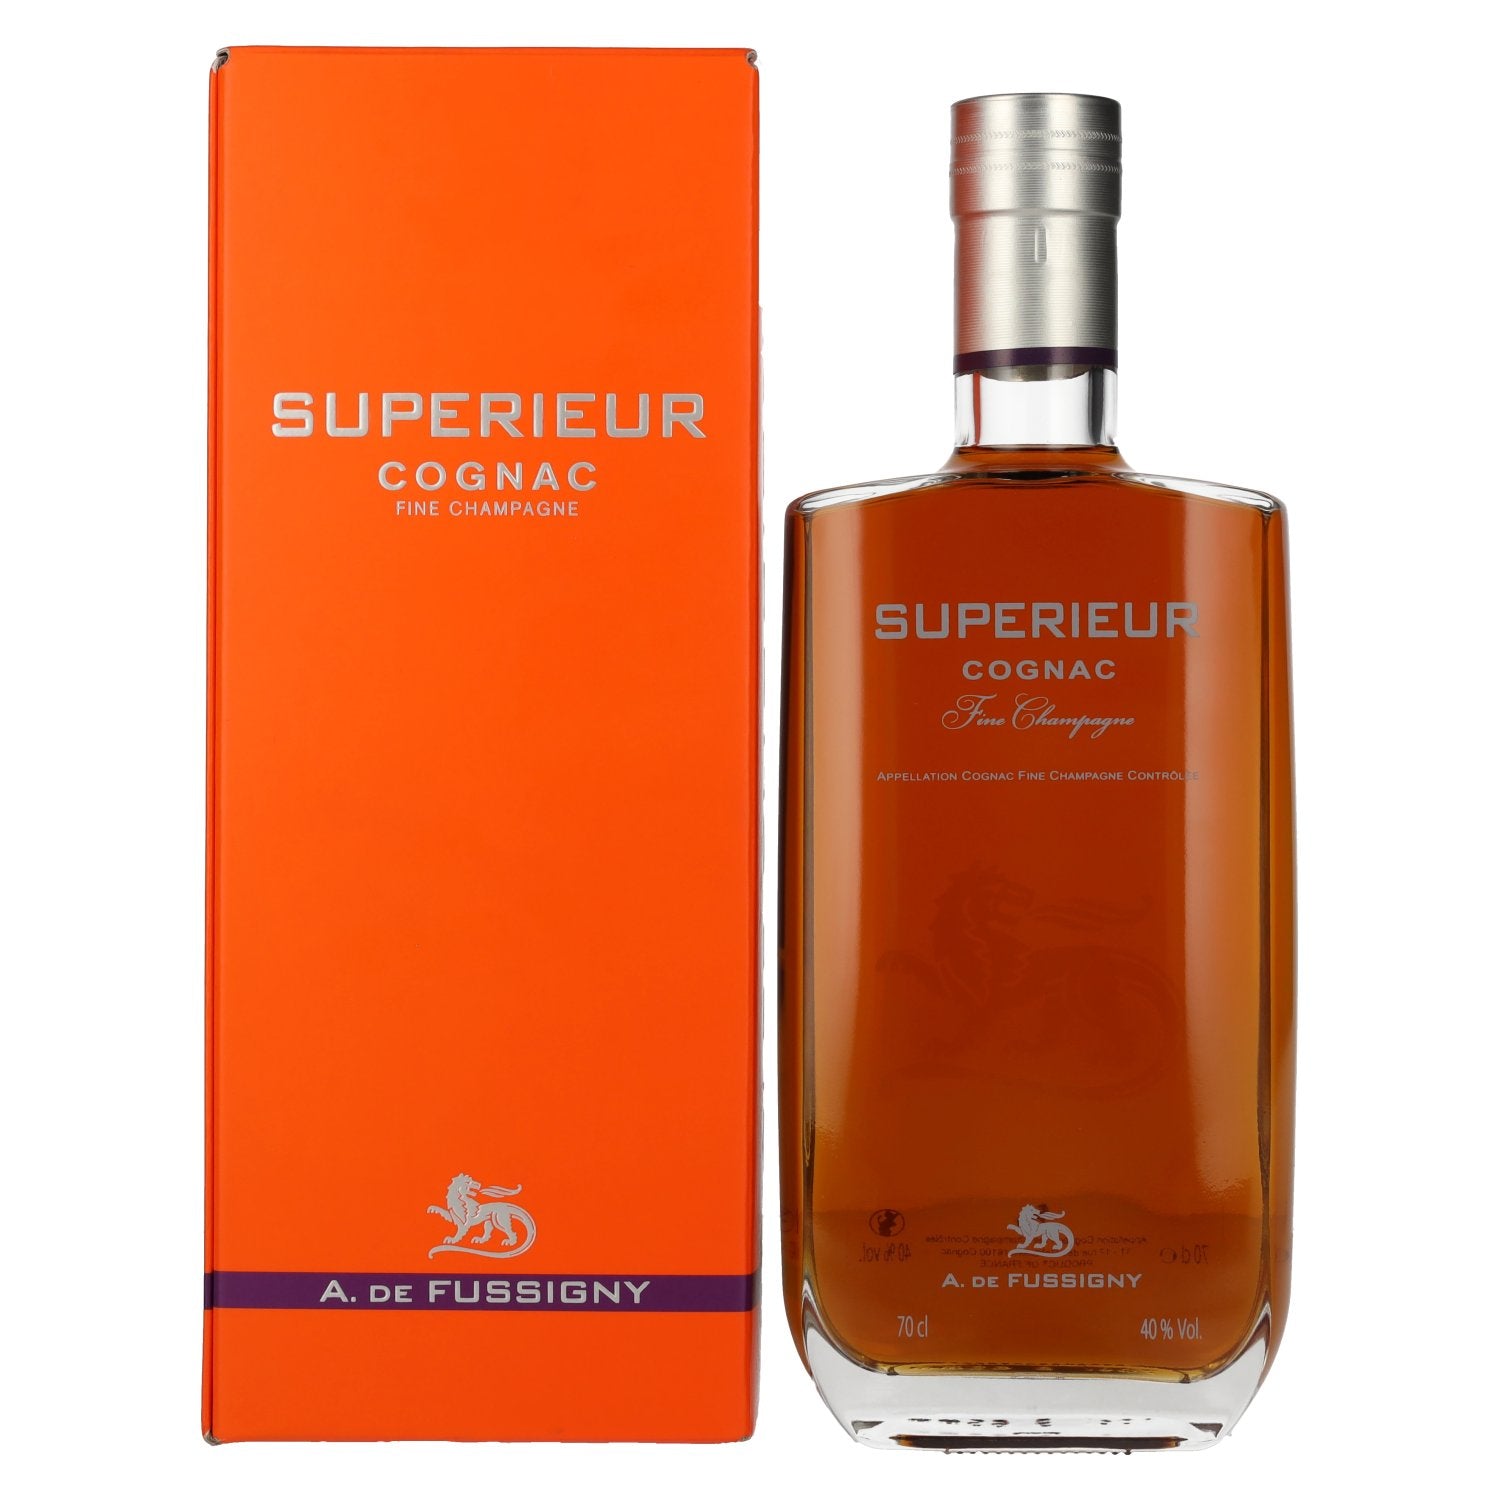 A. de Fussigny SUPERIEUR Fine Champagne Cognac 40% Vol. 0,7l in Giftbox